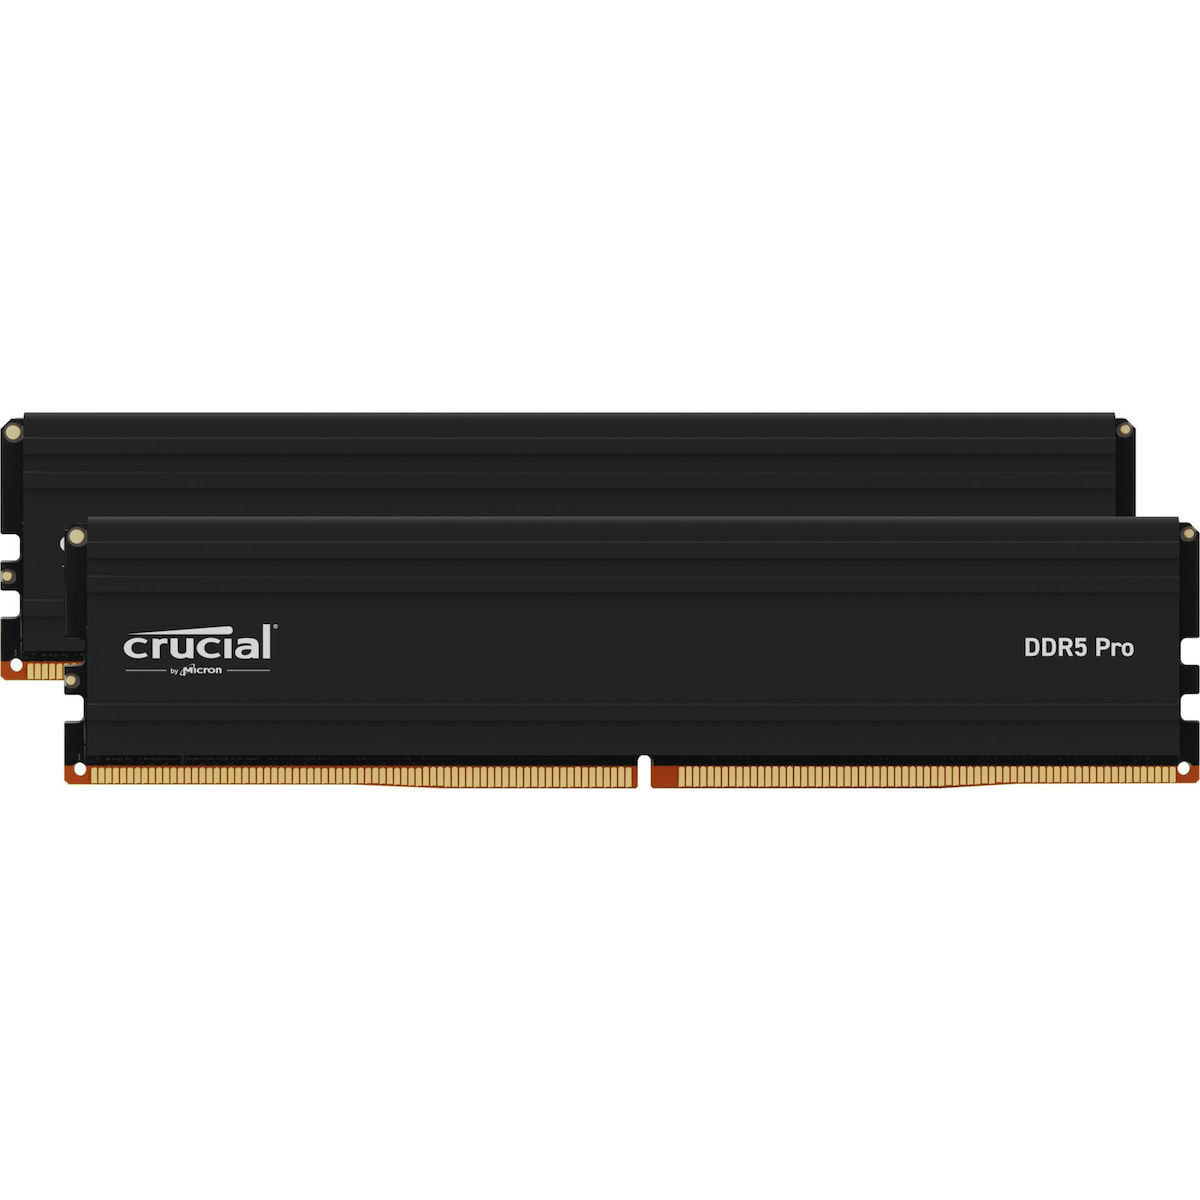 Crucial Pro 32GB DDR5 RAM με 2 Modules (2x16GB) και Ταχύτητα 5600 για Desktop